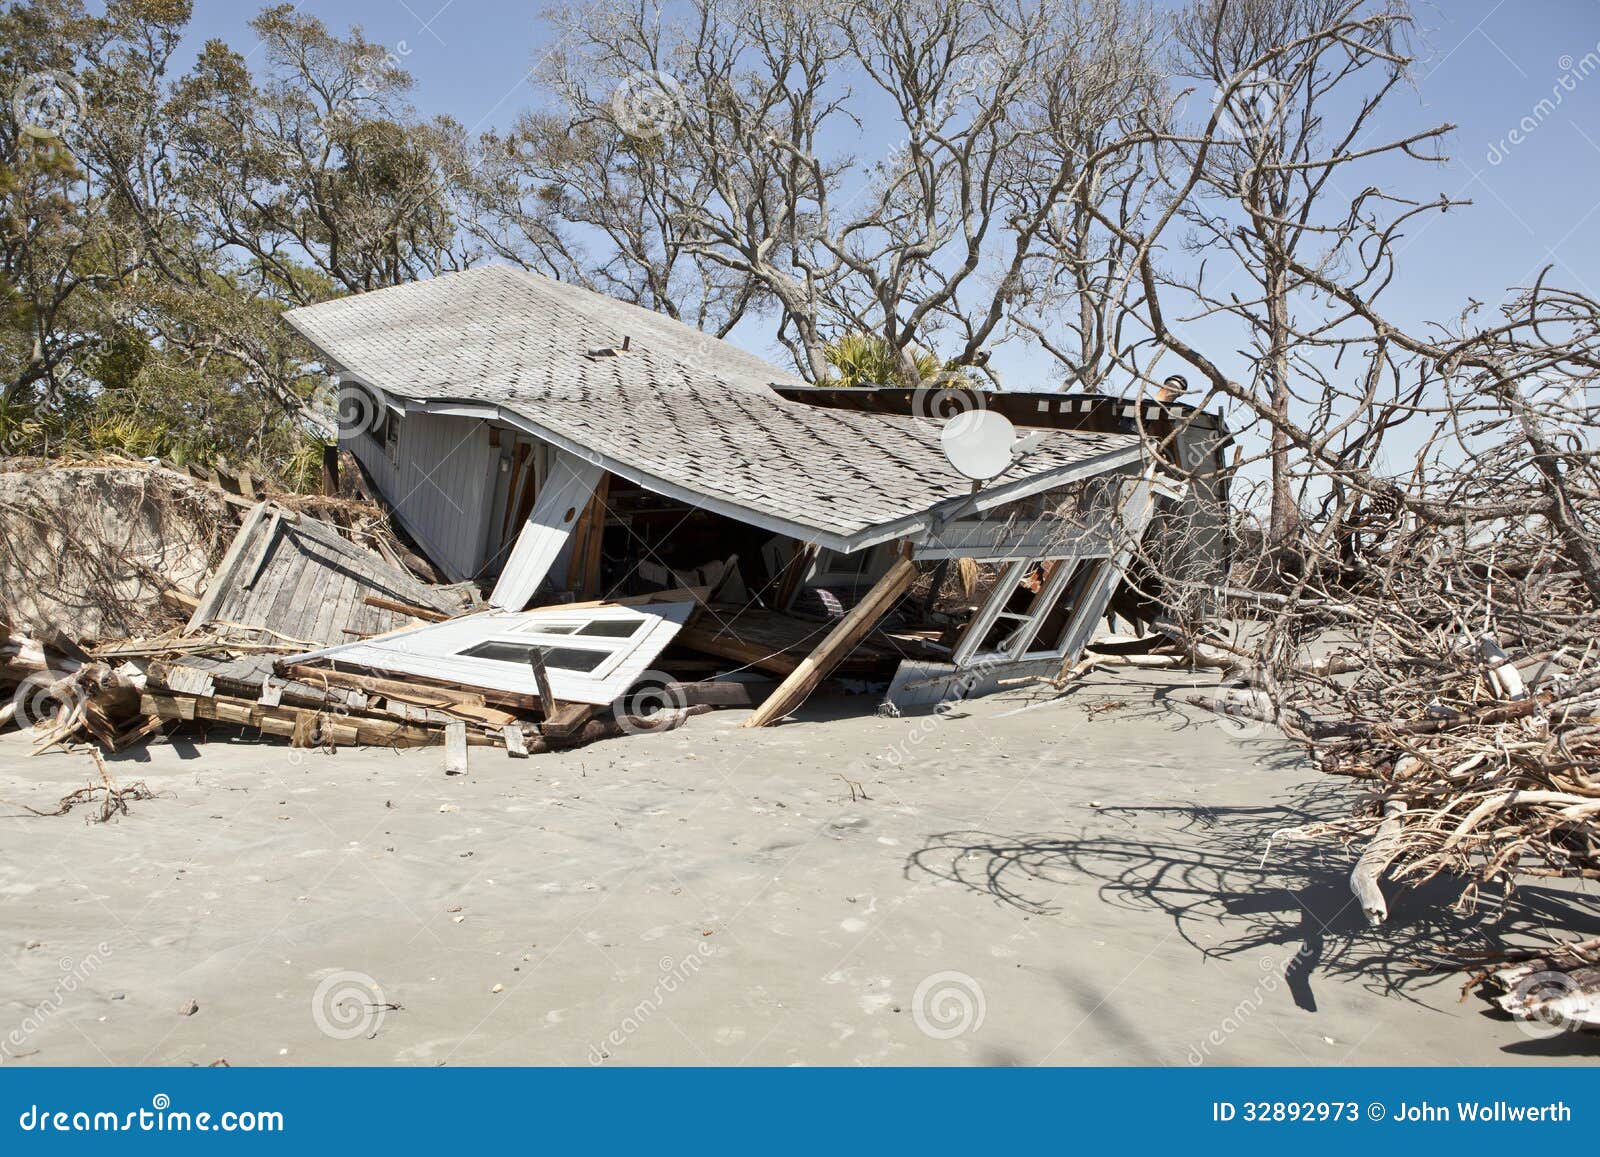 ONU - Venezuela crisis economica - Página 20 Casa-destruida-por-la-inundaci%C3%B3n-32892973